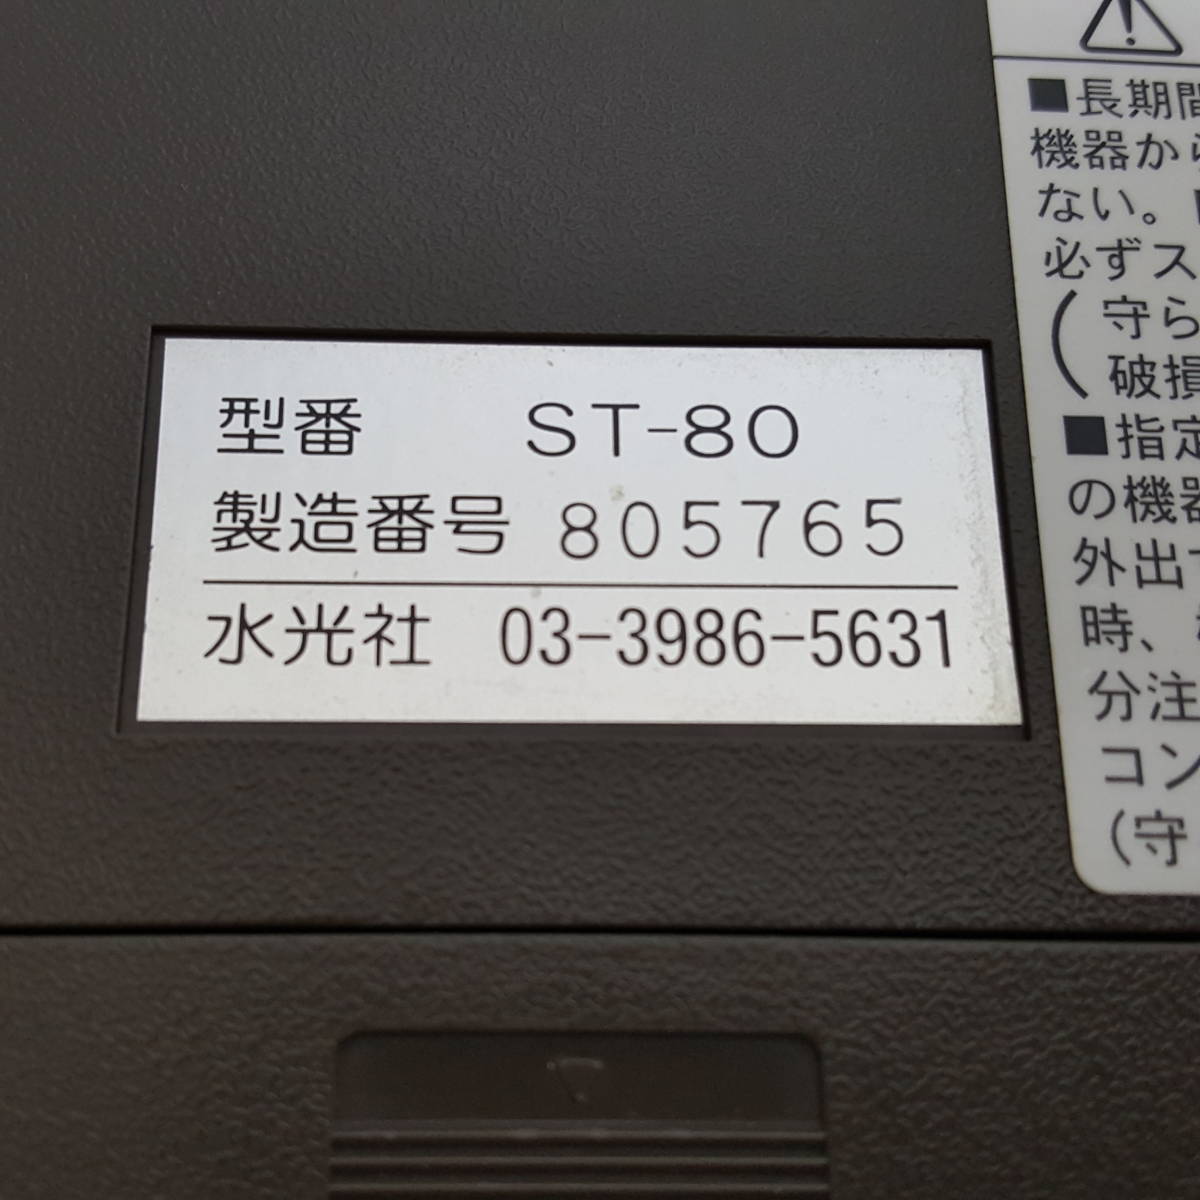 [ ST-80 ] water light company ST-80 new . poetry * haiku sweatshirt 